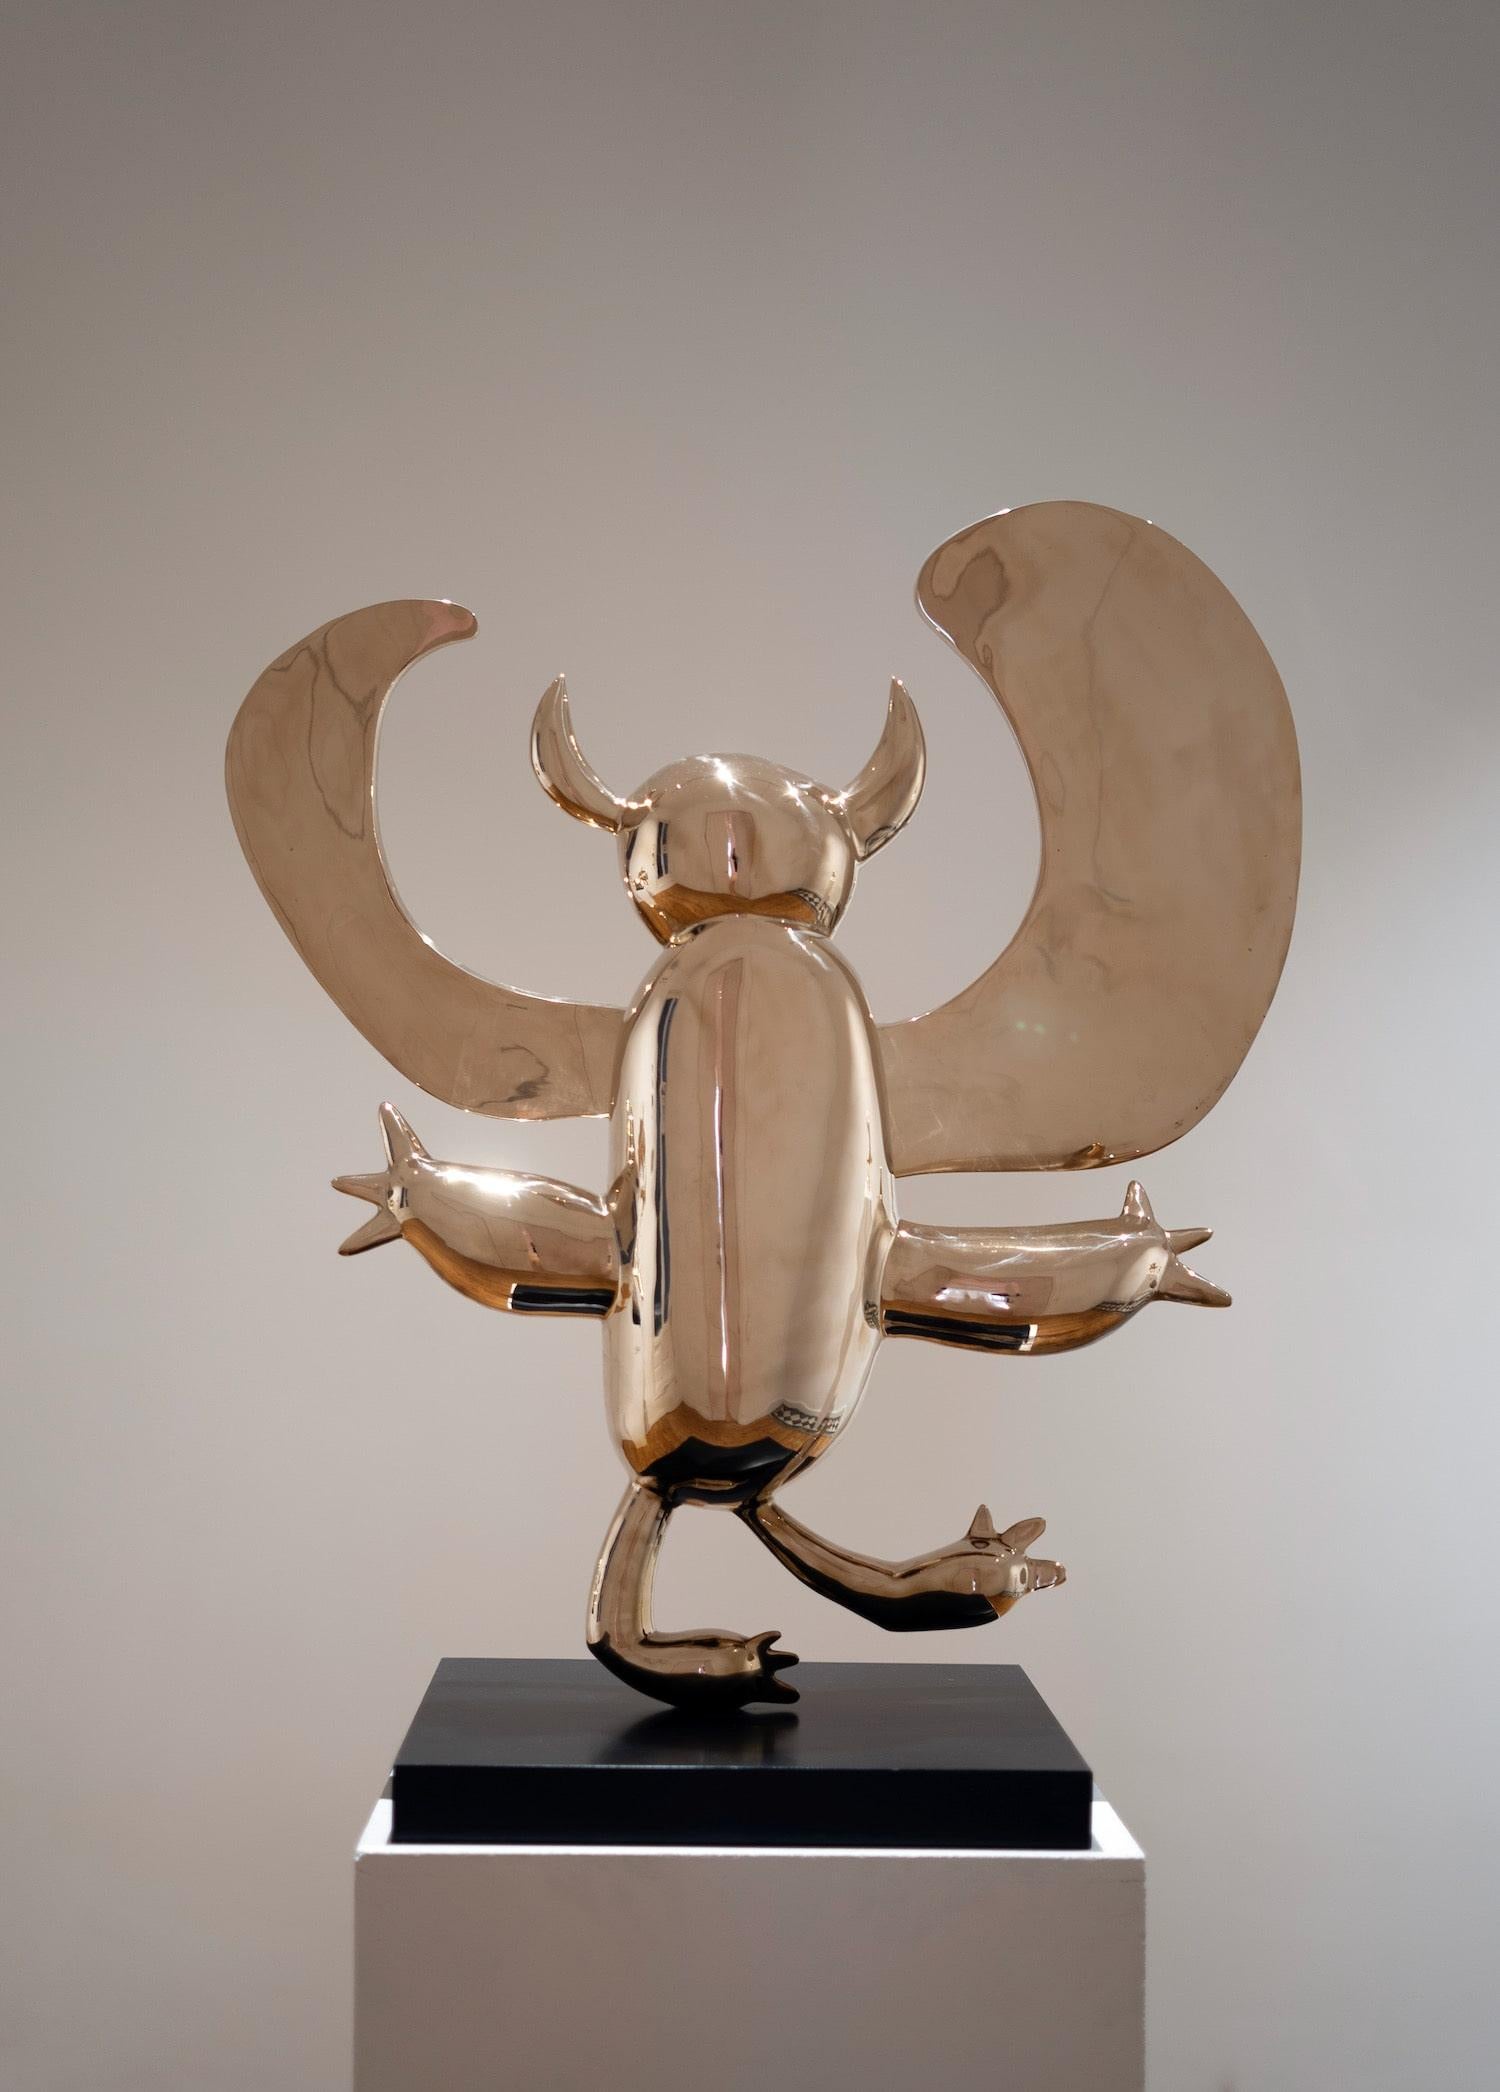 Der geflügelte Dämon ist eine polierte Bronzeskulptur des zeitgenössischen Künstlers Marcelo Martin Burgos mit den Maßen 92 × 79 × 45 cm (36,2 × 31,1 × 17,7 in). 
Die Skulptur ist signiert und nummeriert, gehört zu einer limitierten Auflage von 12